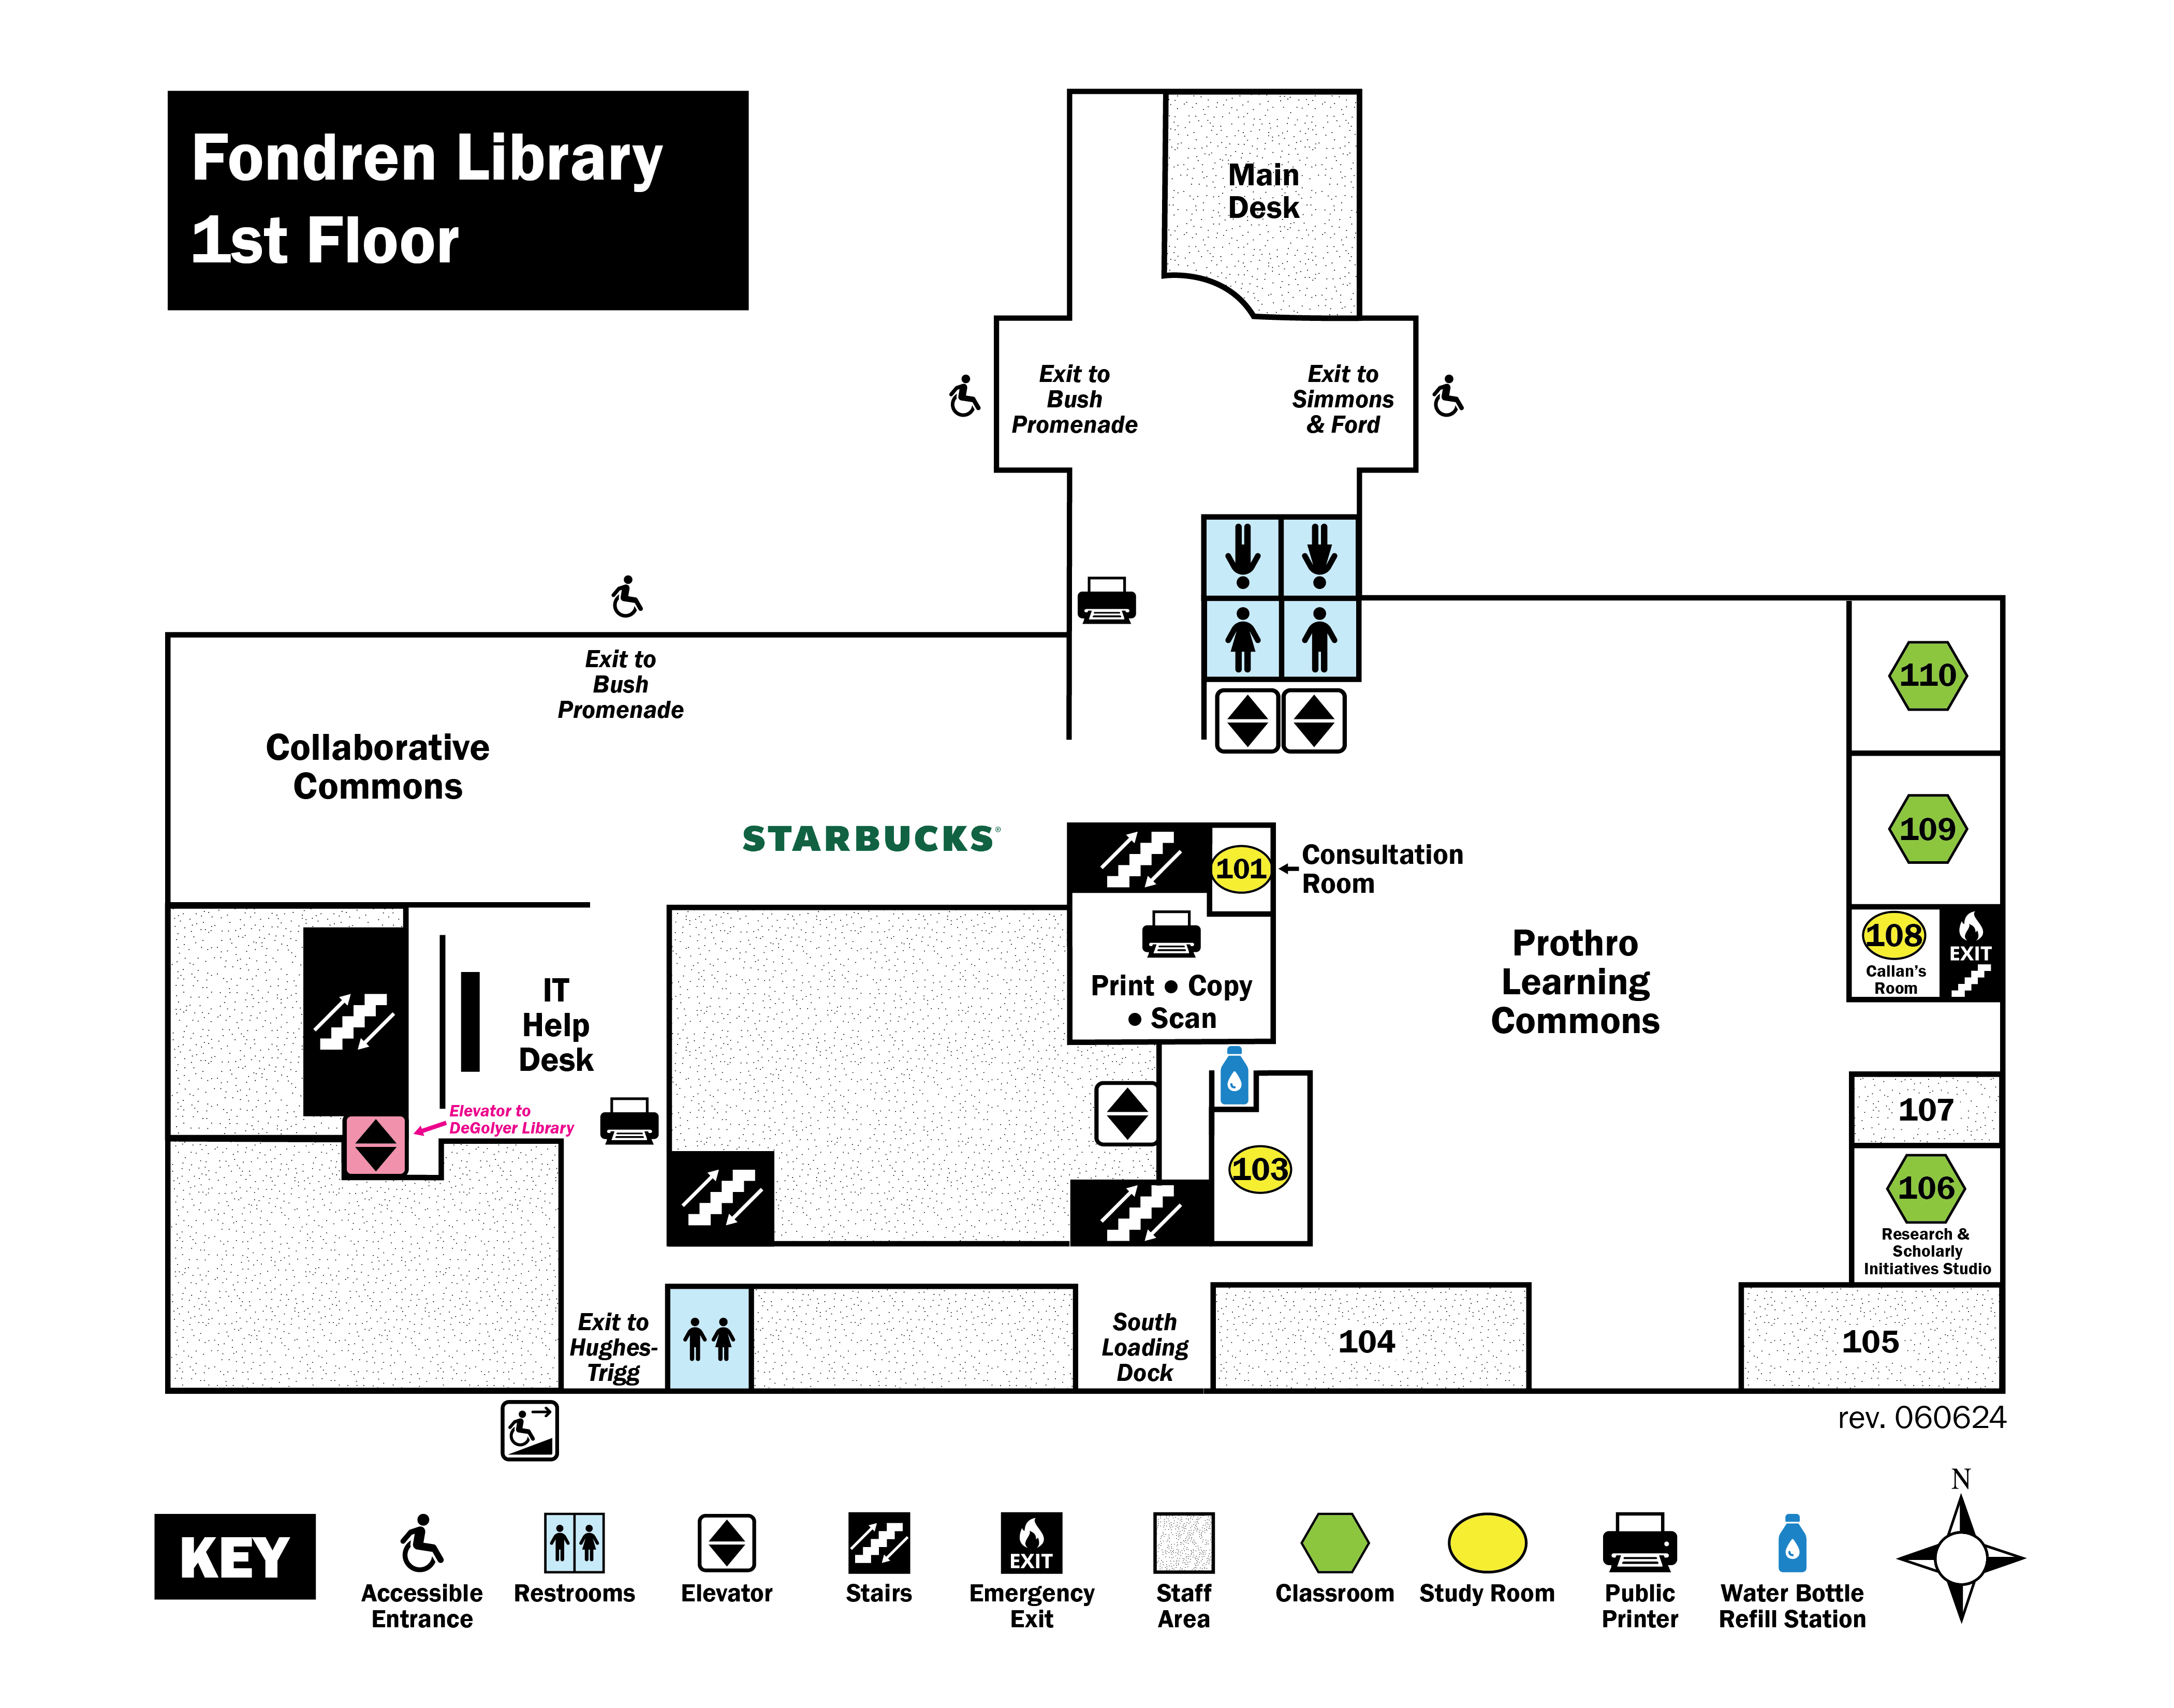 Fondren Library Red Level 1 map